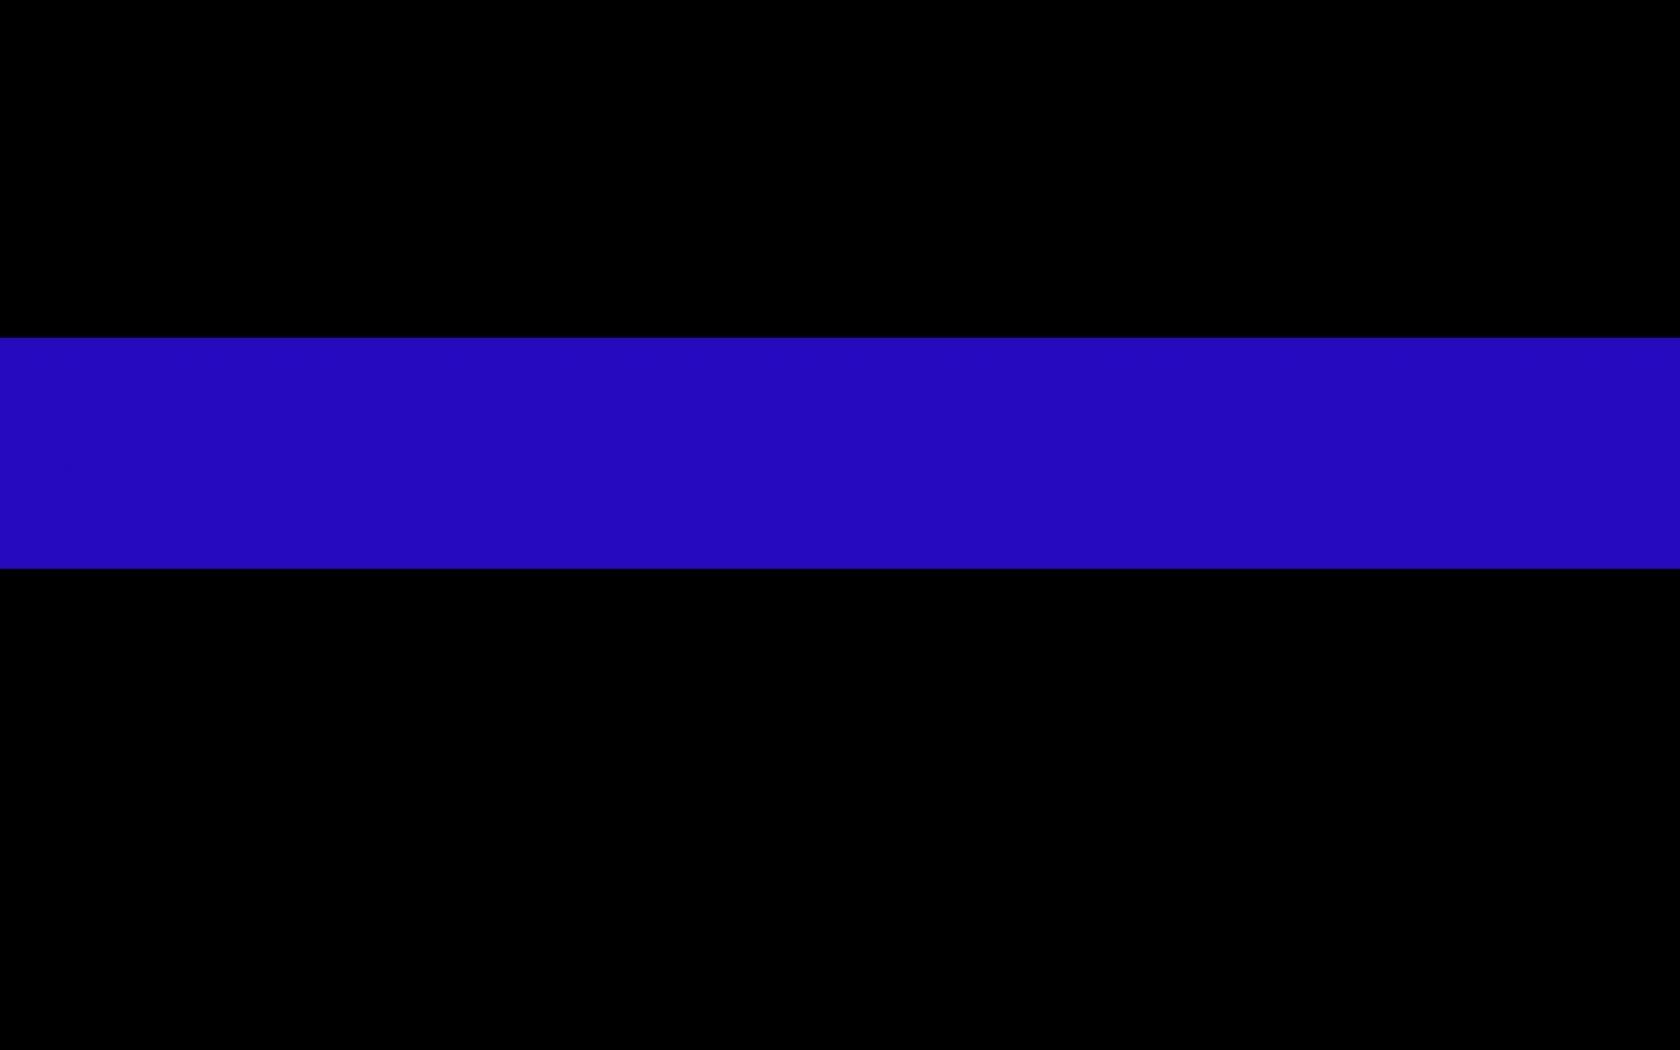 blue line law enforcement backgrounds le themed plix related high 1680x1050